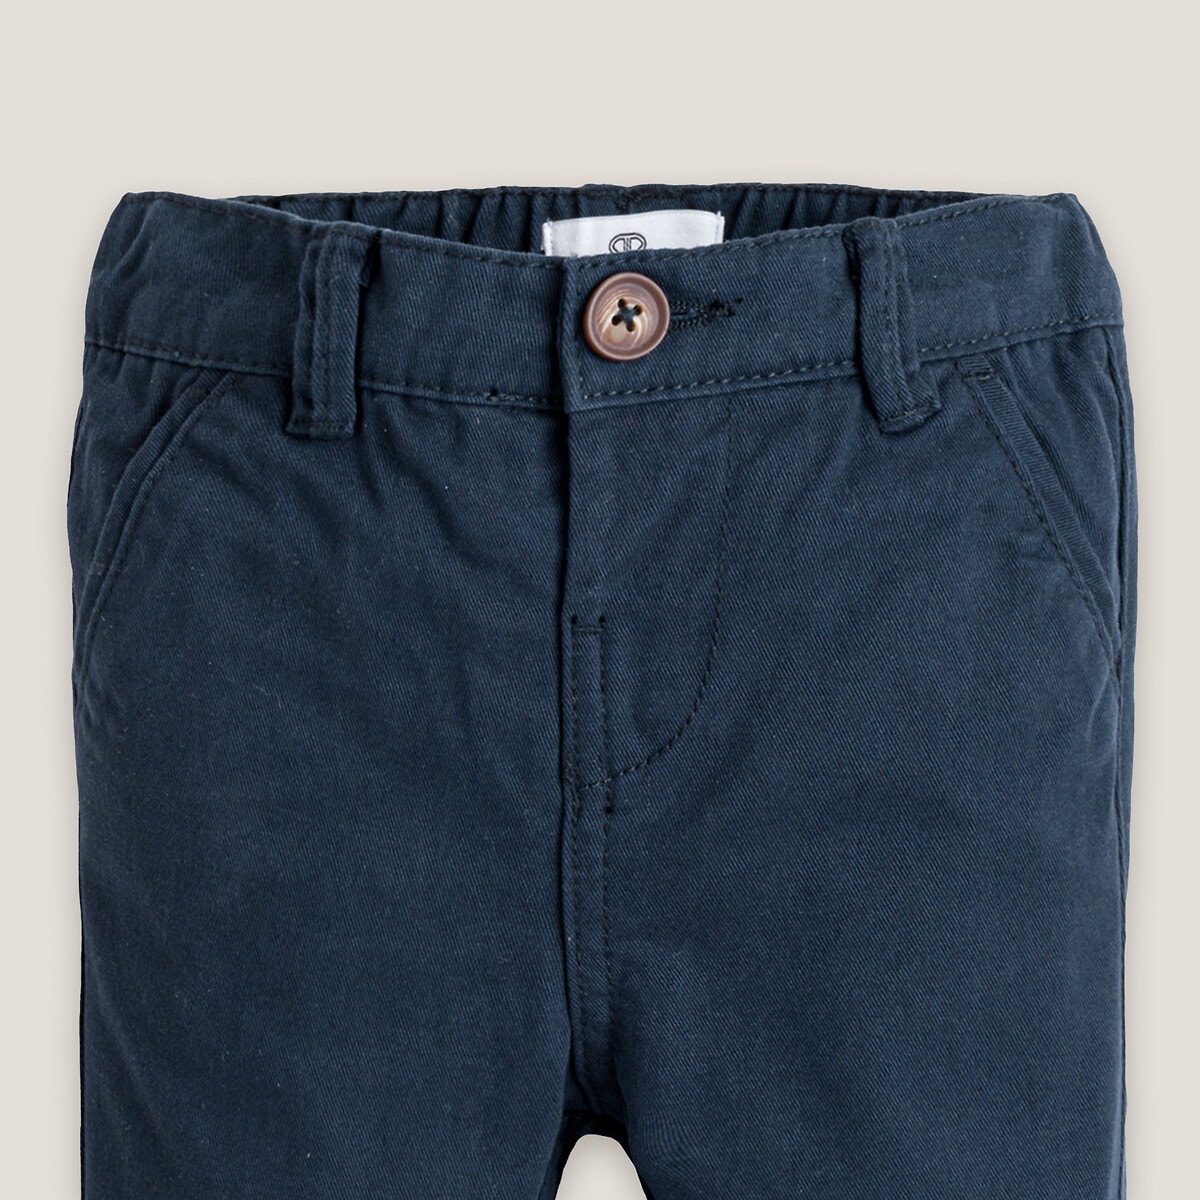 Παντελόνι με λοξές τσέπες, 3 μηνών - 3 ετών